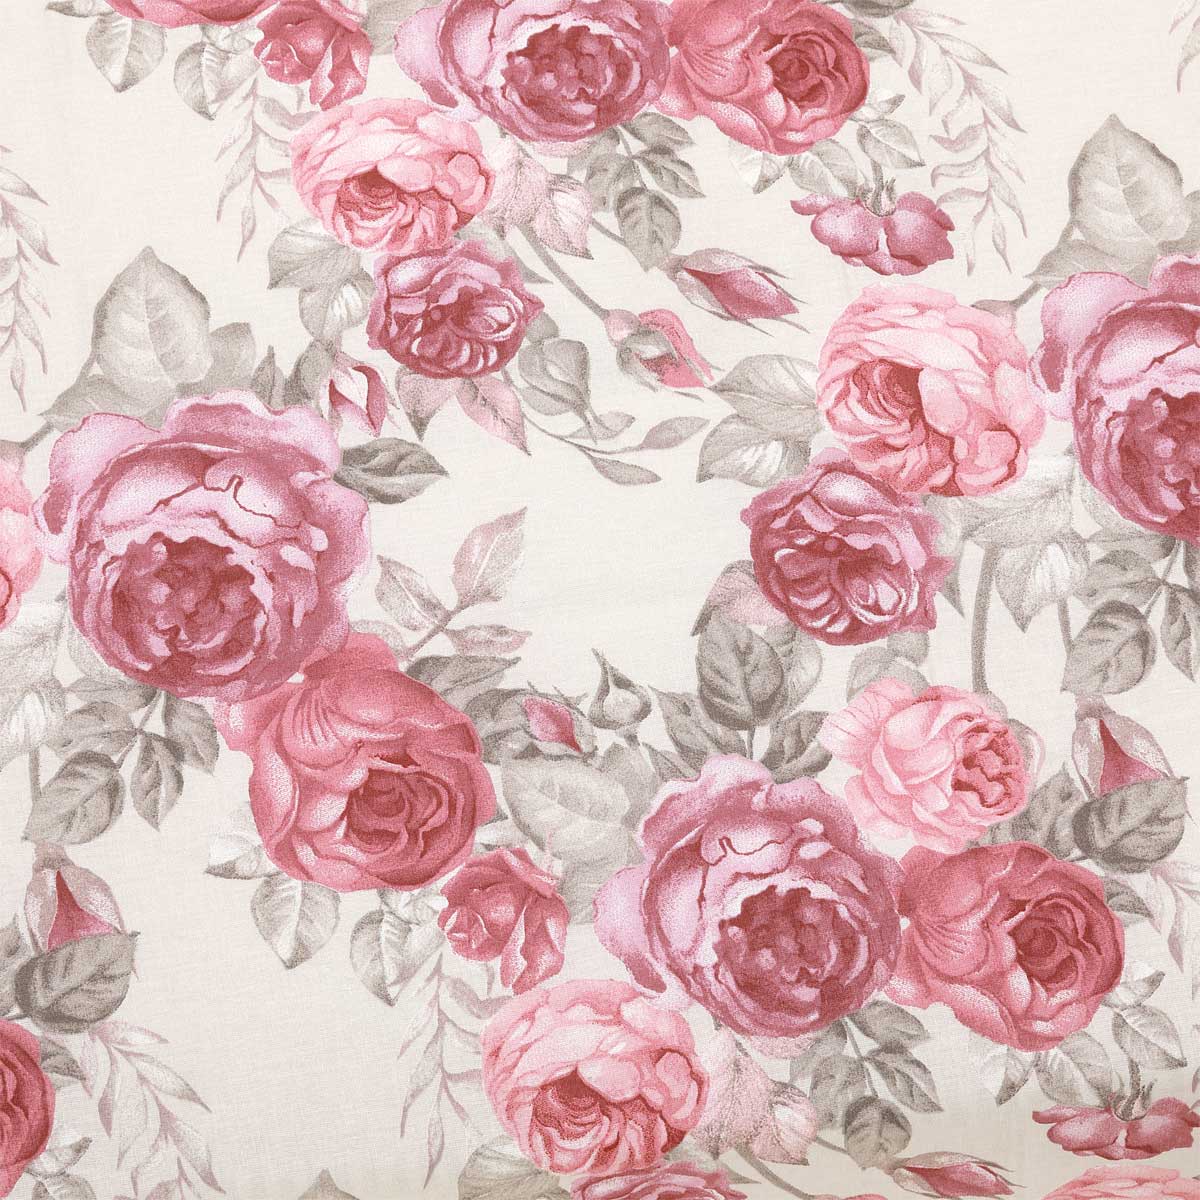 Coordinato letto sposa a fiori rosa - Flora